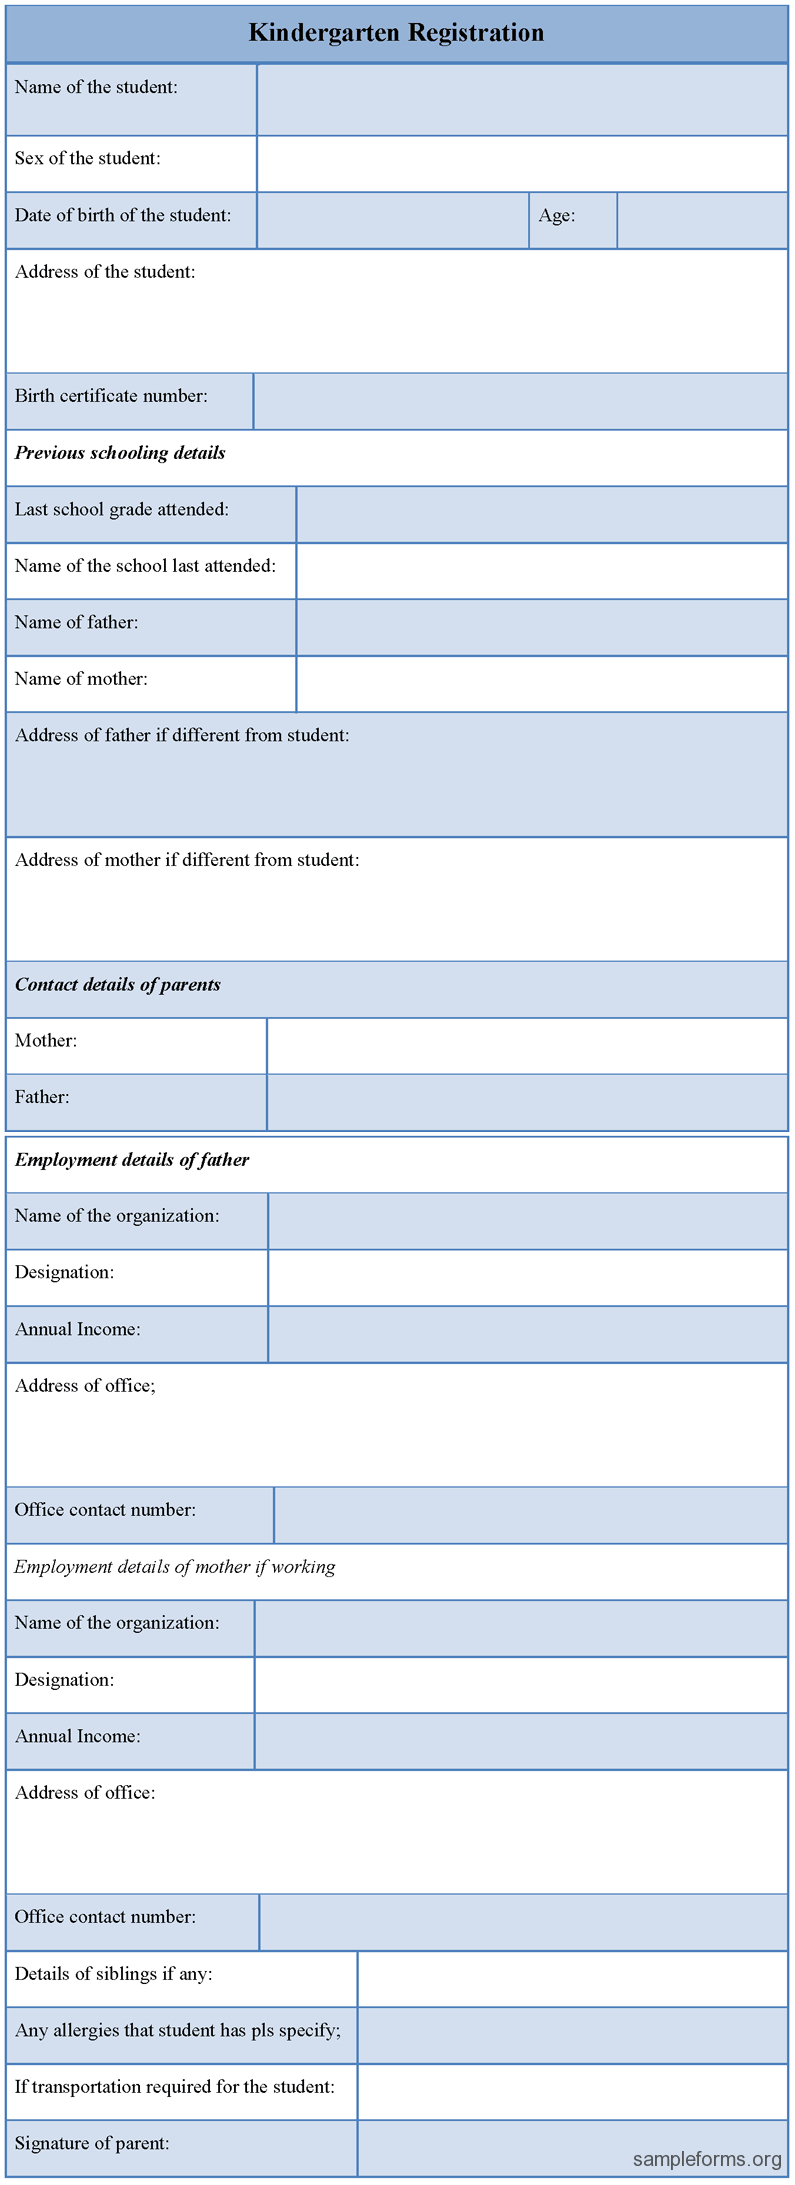 Kindergarten Registration Form : Sample Forms Throughout School Registration Form Template Word